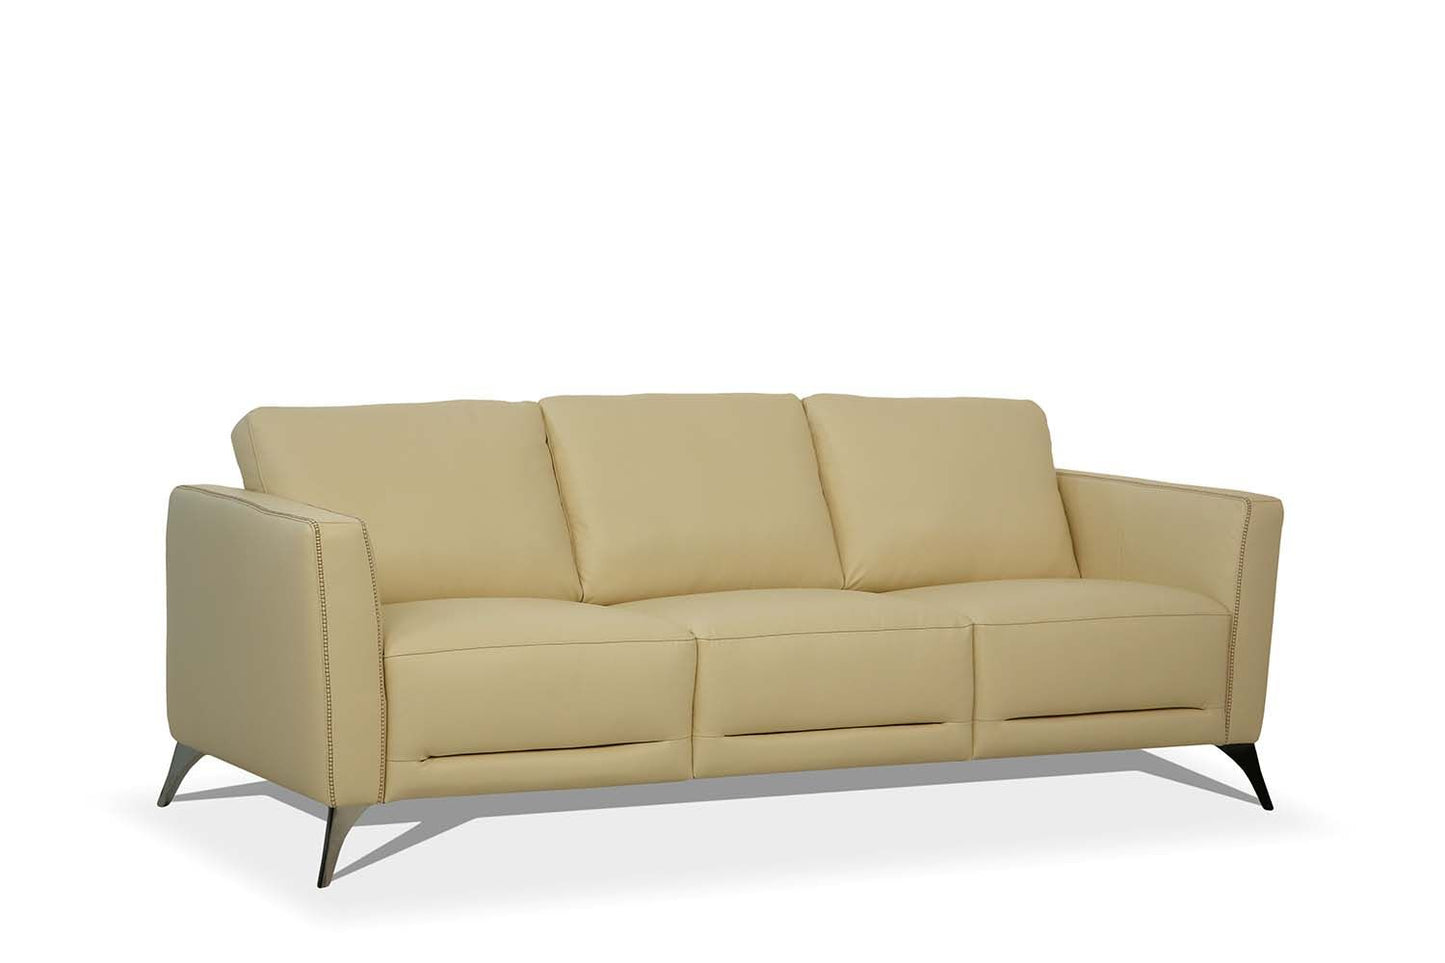 Malaga Cream Leather Sofa